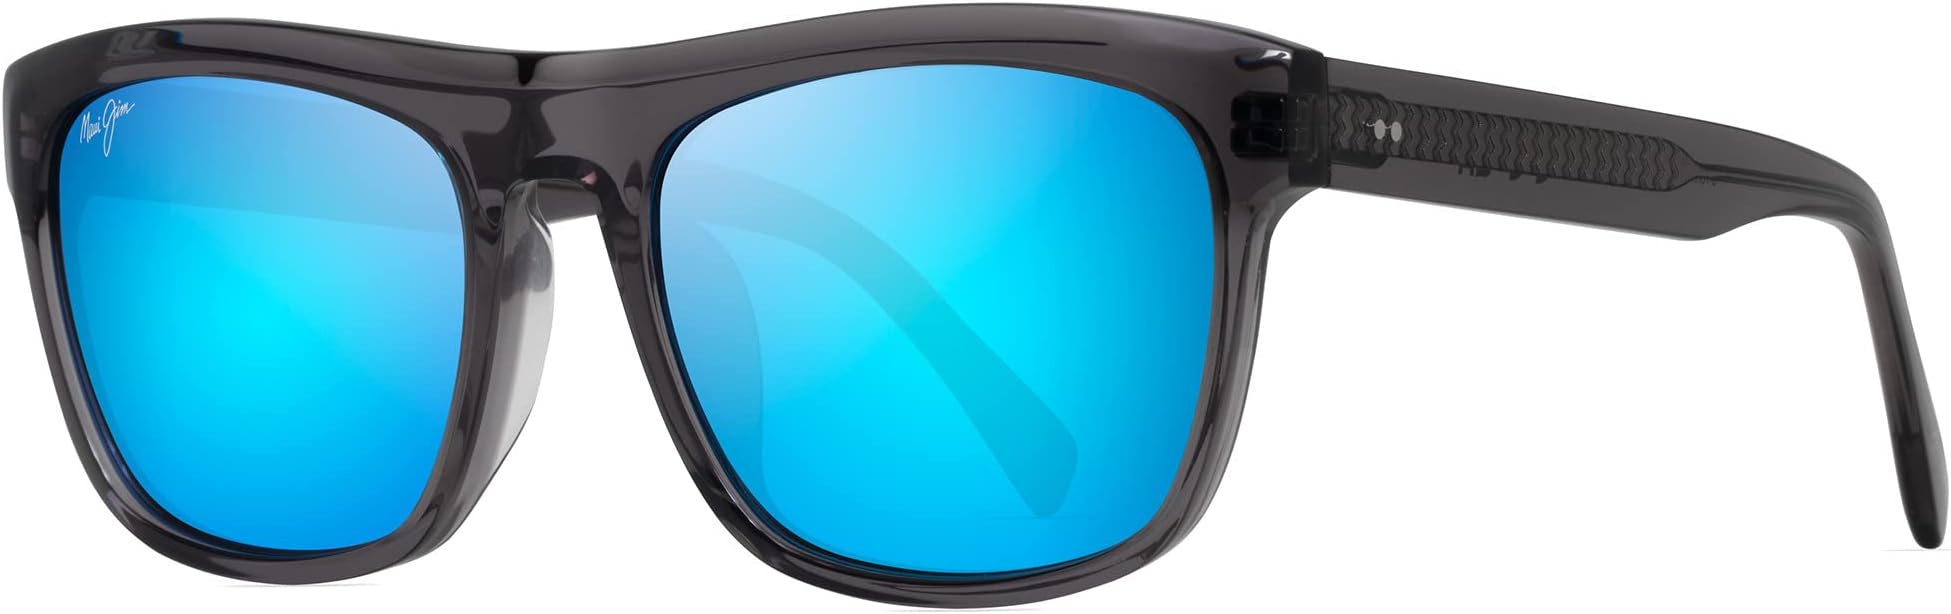 Солнцезащитные очки S-Turns Maui Jim, цвет Dark Translucent Grey/Blue Hawaii солнцезащитные очки kou maui jim цвет navy blue blue hawaii